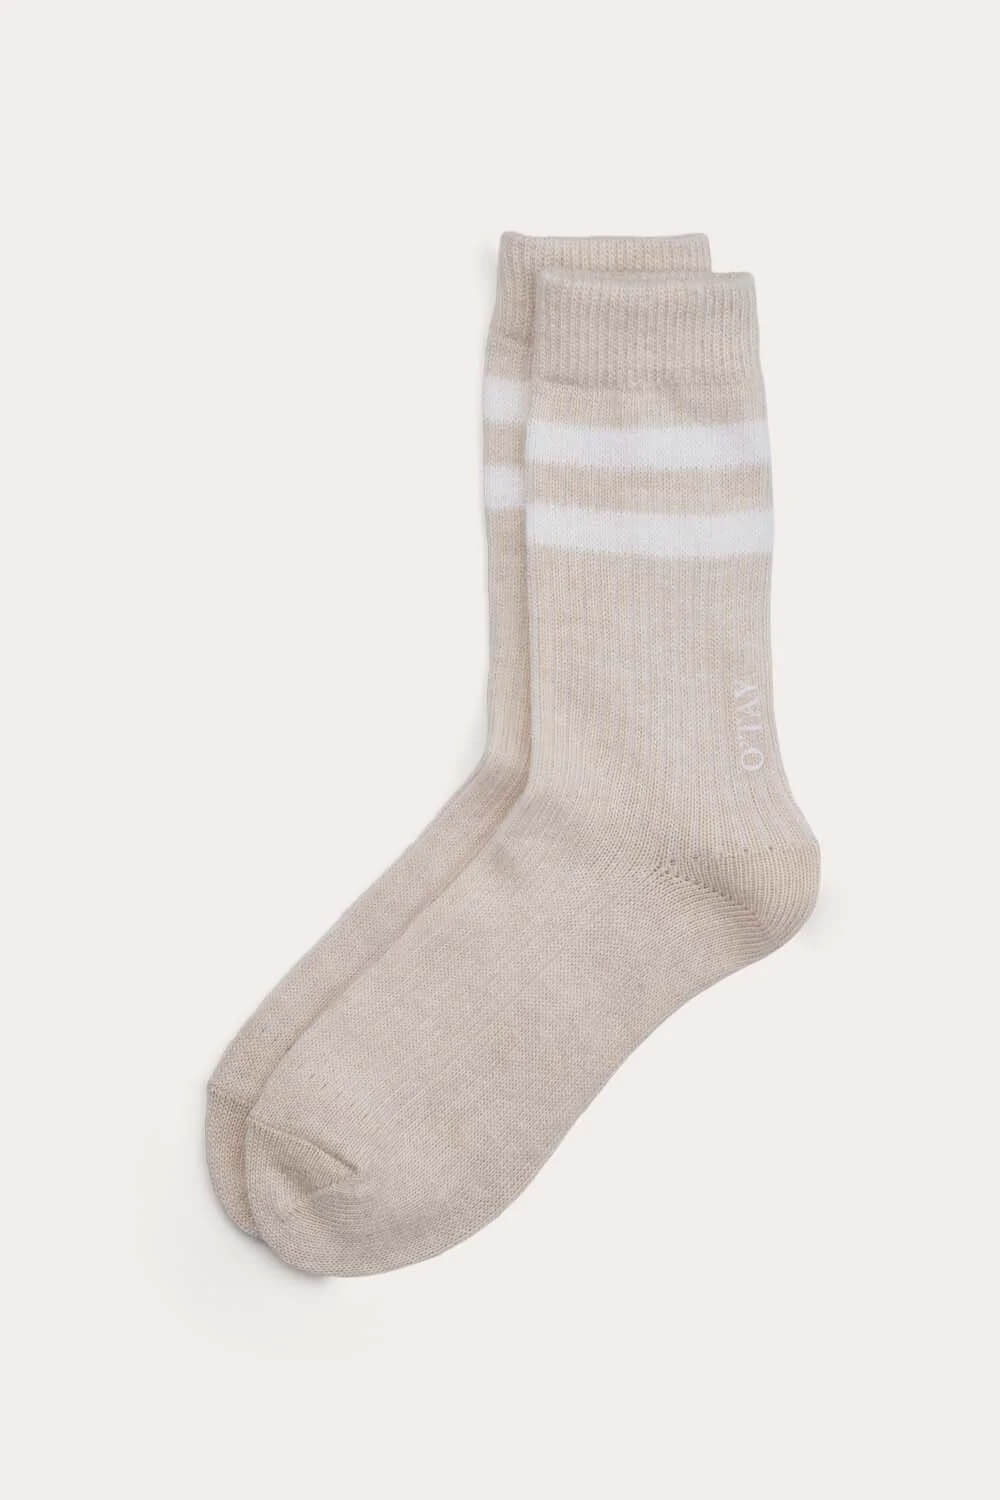 O'TAY Tennis Socks Blend Socks Sand/Off White